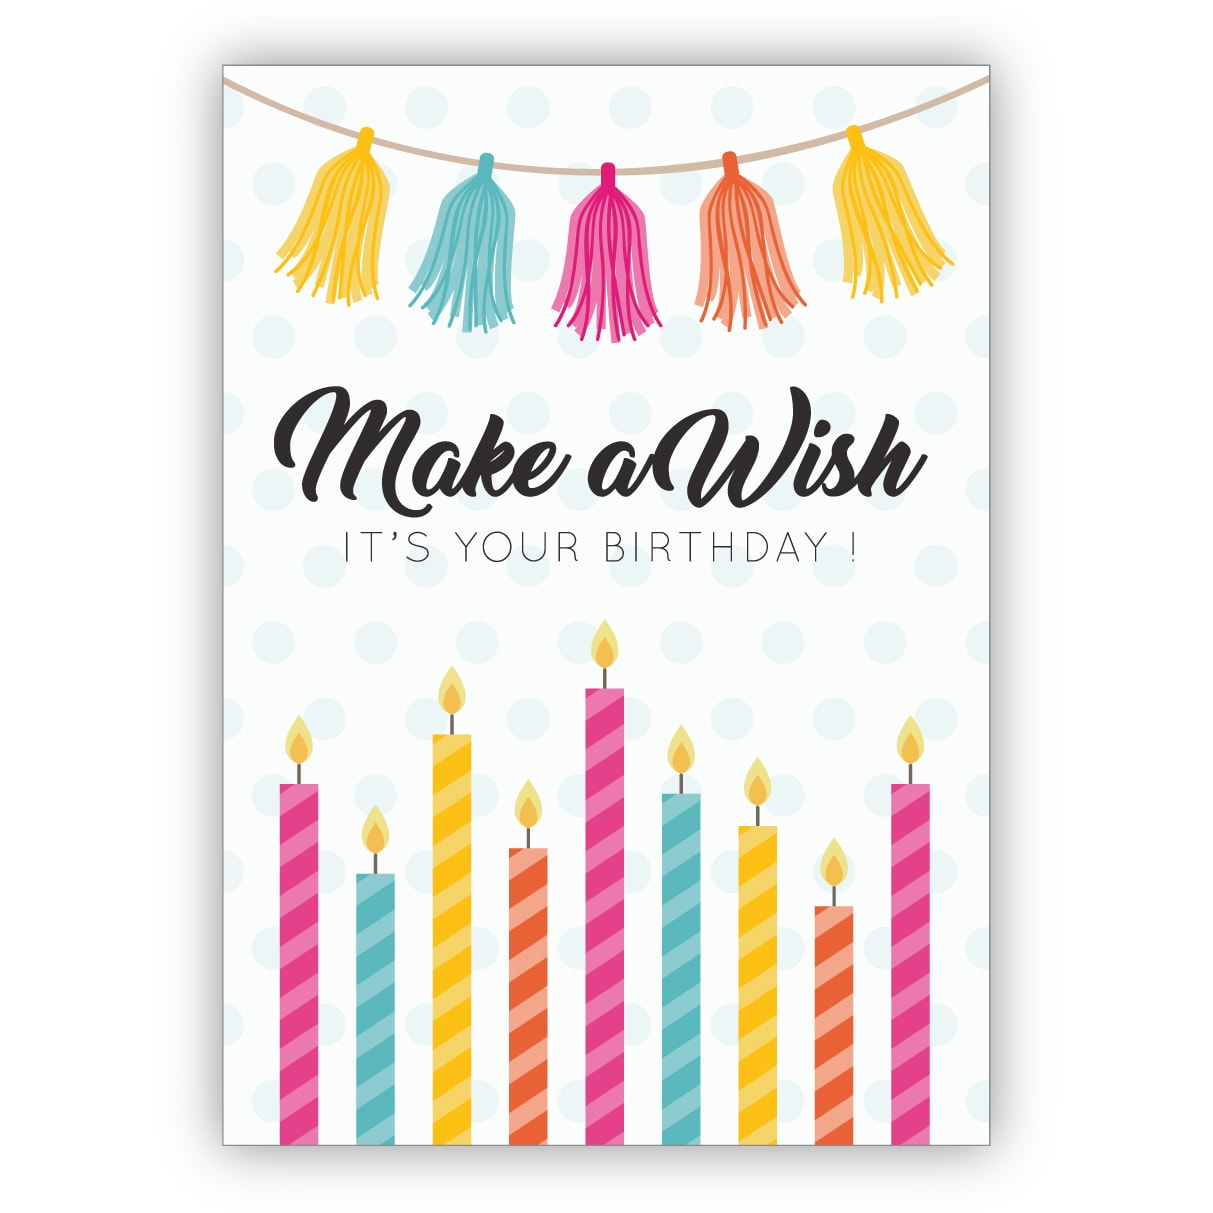 Coole Geburtstagskarte auch als Gutschein mit bunten Kerzen: Make a wish it's your birthday!